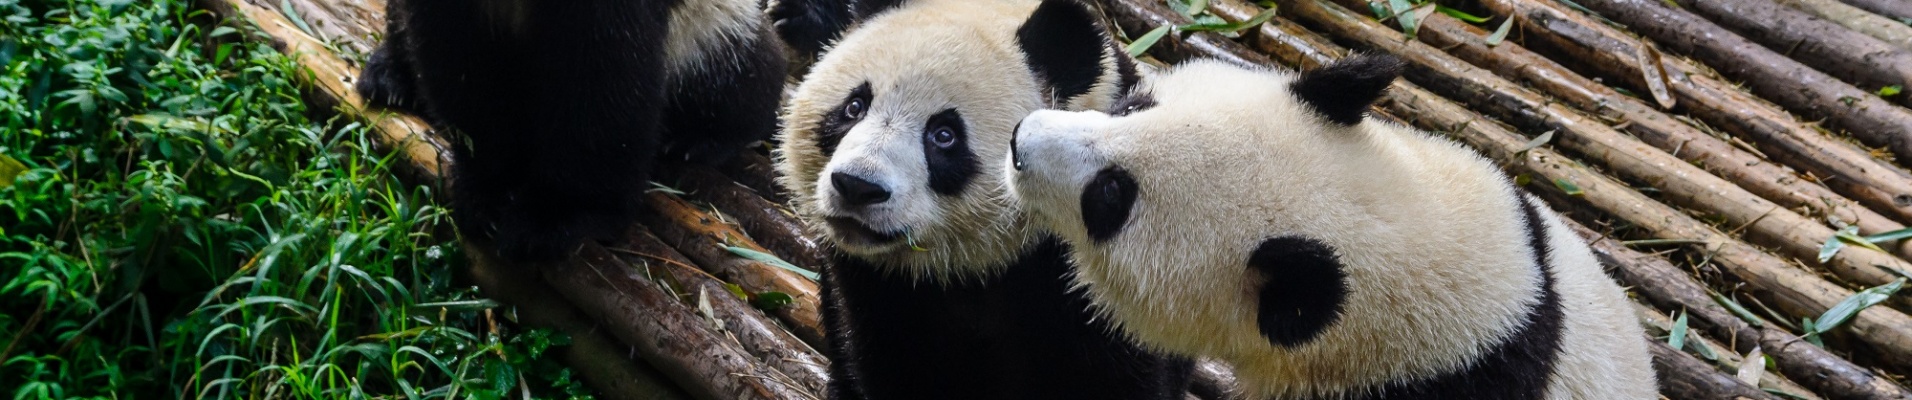 Pandas attendant leur petit déjeuner au Centre de recherche sur le panda géant de Chengdu